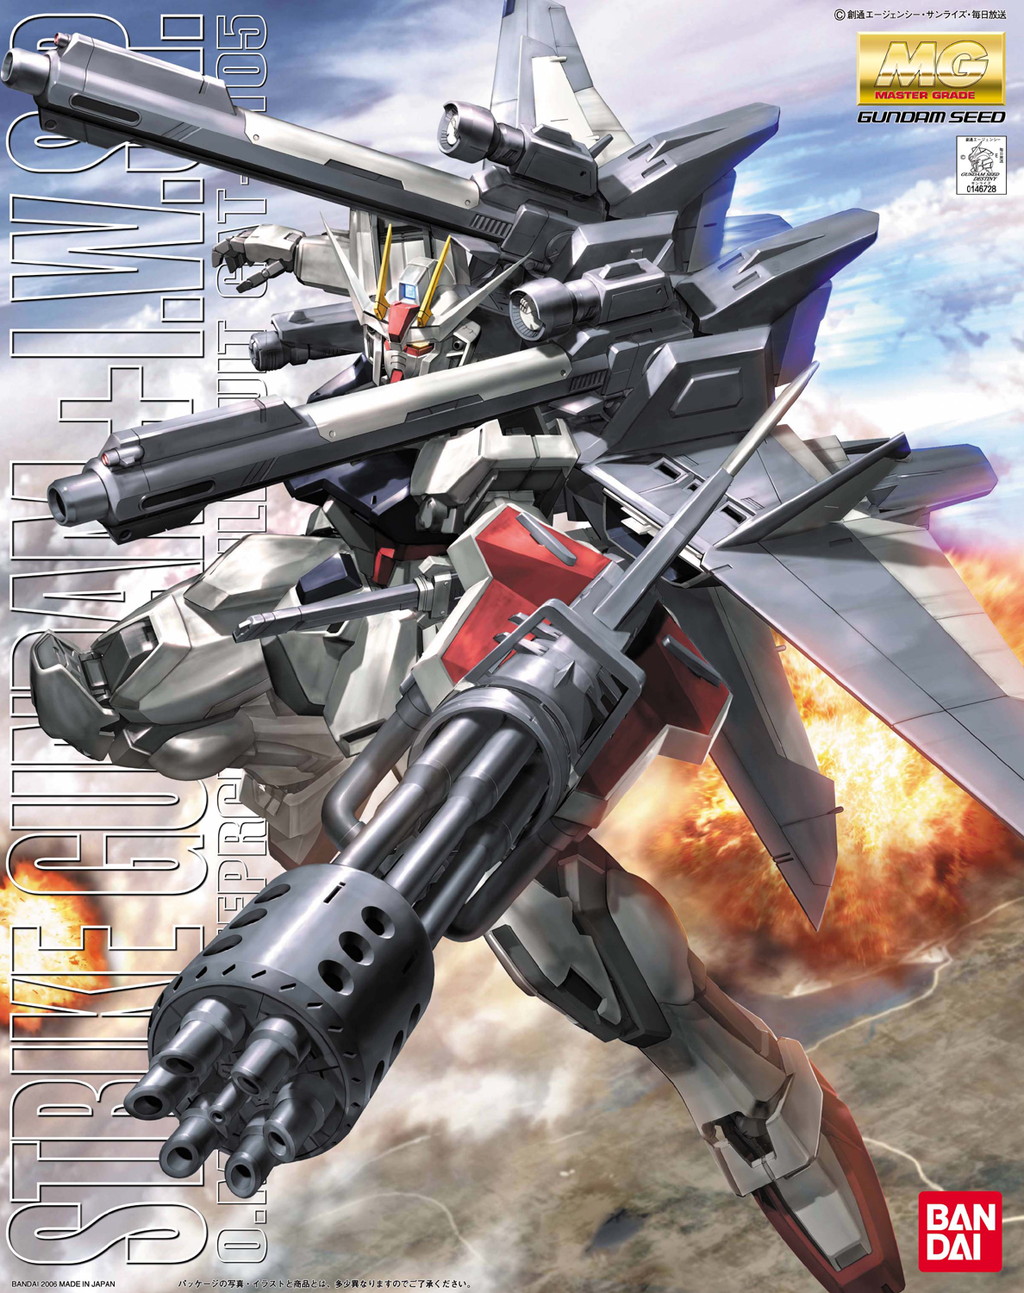 MG 1/100 GAT-X105 ストライクガンダム + I.W.S.P. [Strike Gundam + I.W.S.P.] 5064127 4573102641274 0146728 4543112467287